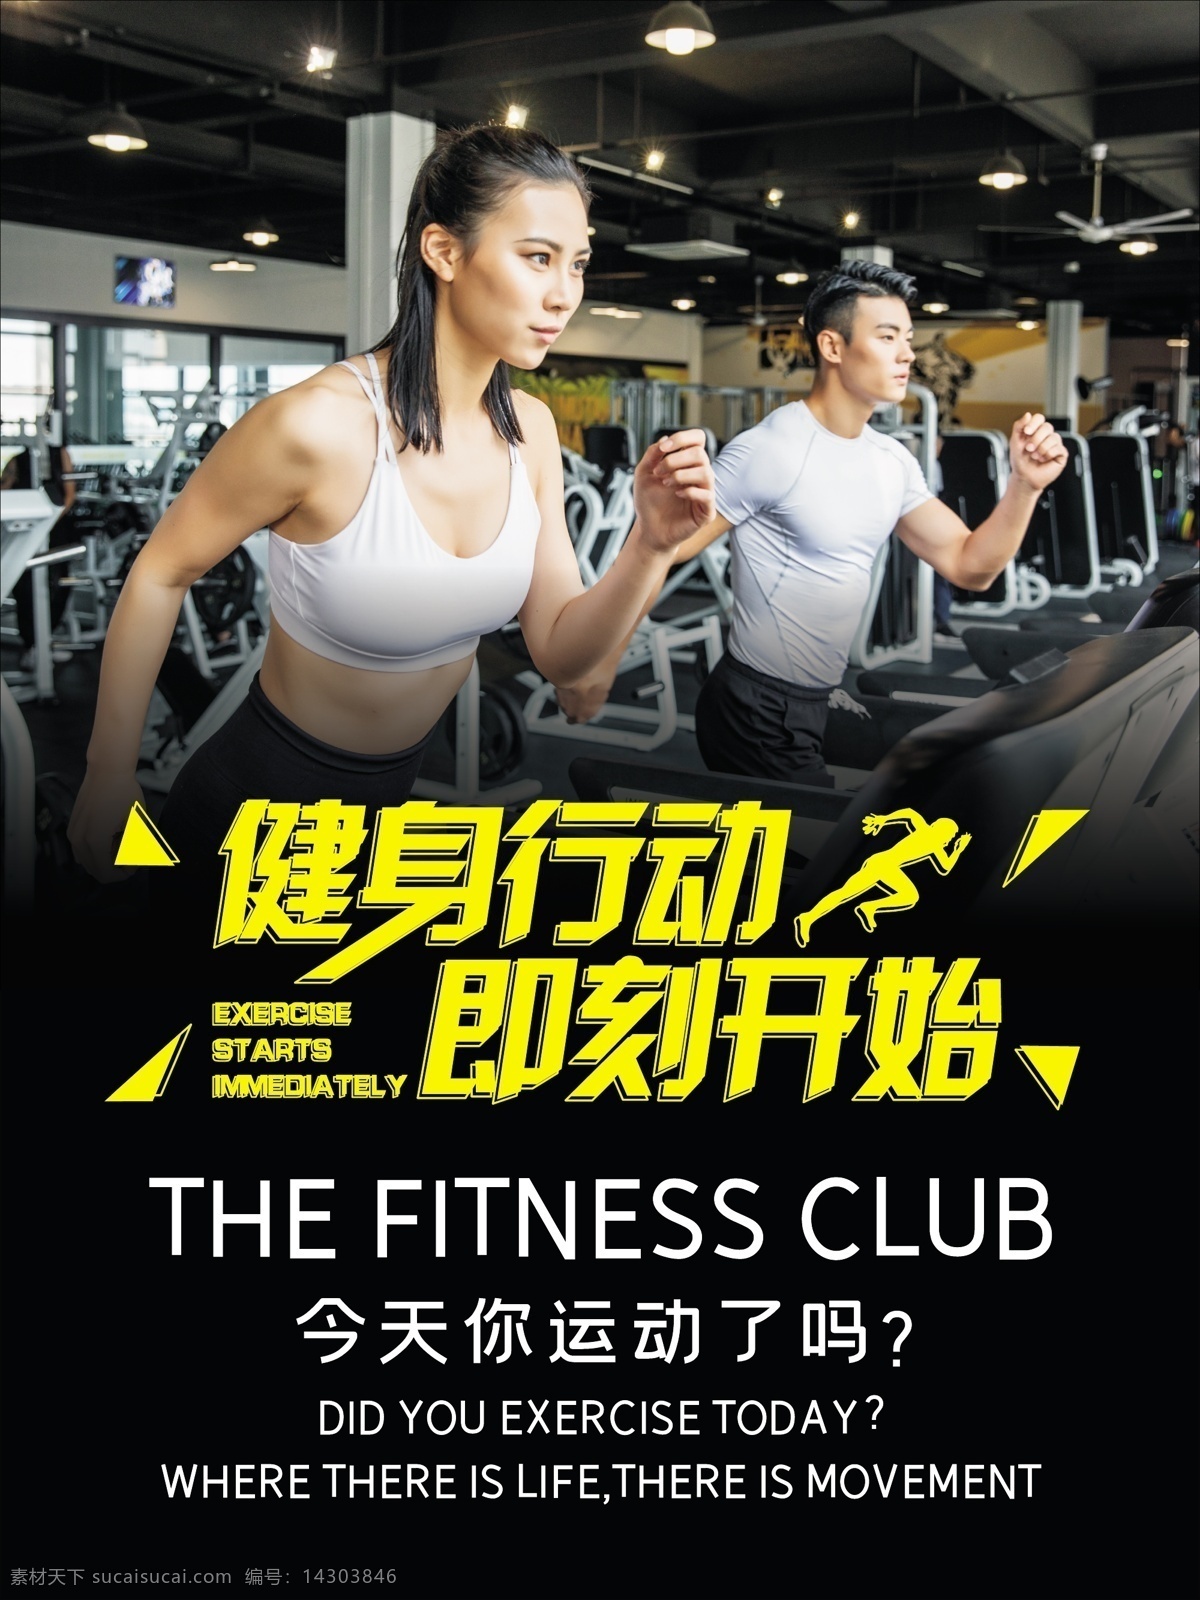 健身 行动 即刻 开始 健身房 海报 健身房海报 运动 促销海报